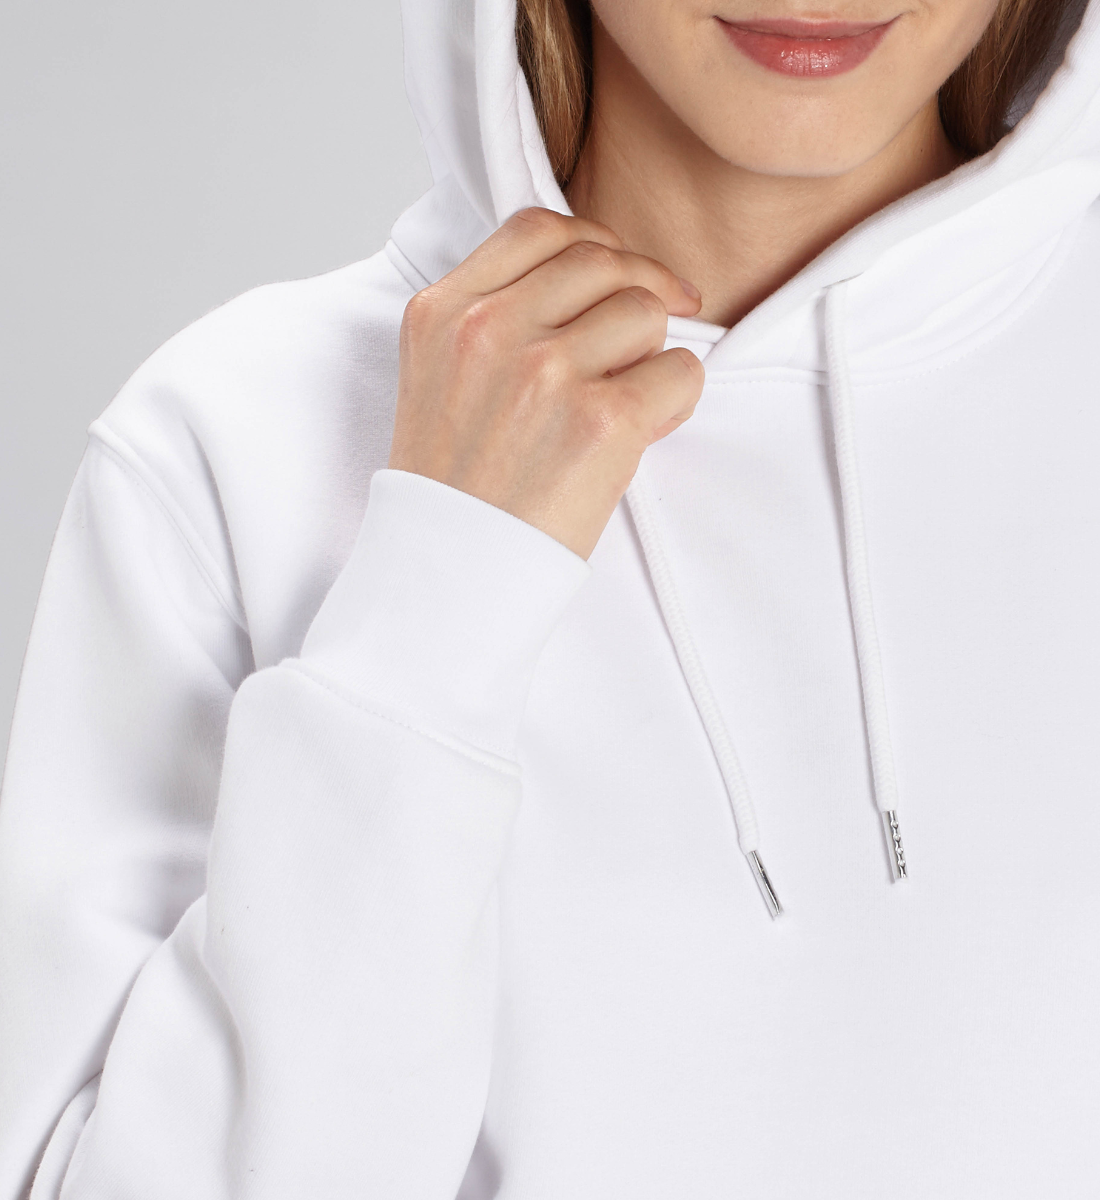 sonne + mond l yoga pullover weiß l yoga hoodie l umweltfreundliche mode aus ökologischen textilien l yoga mode online shoppen